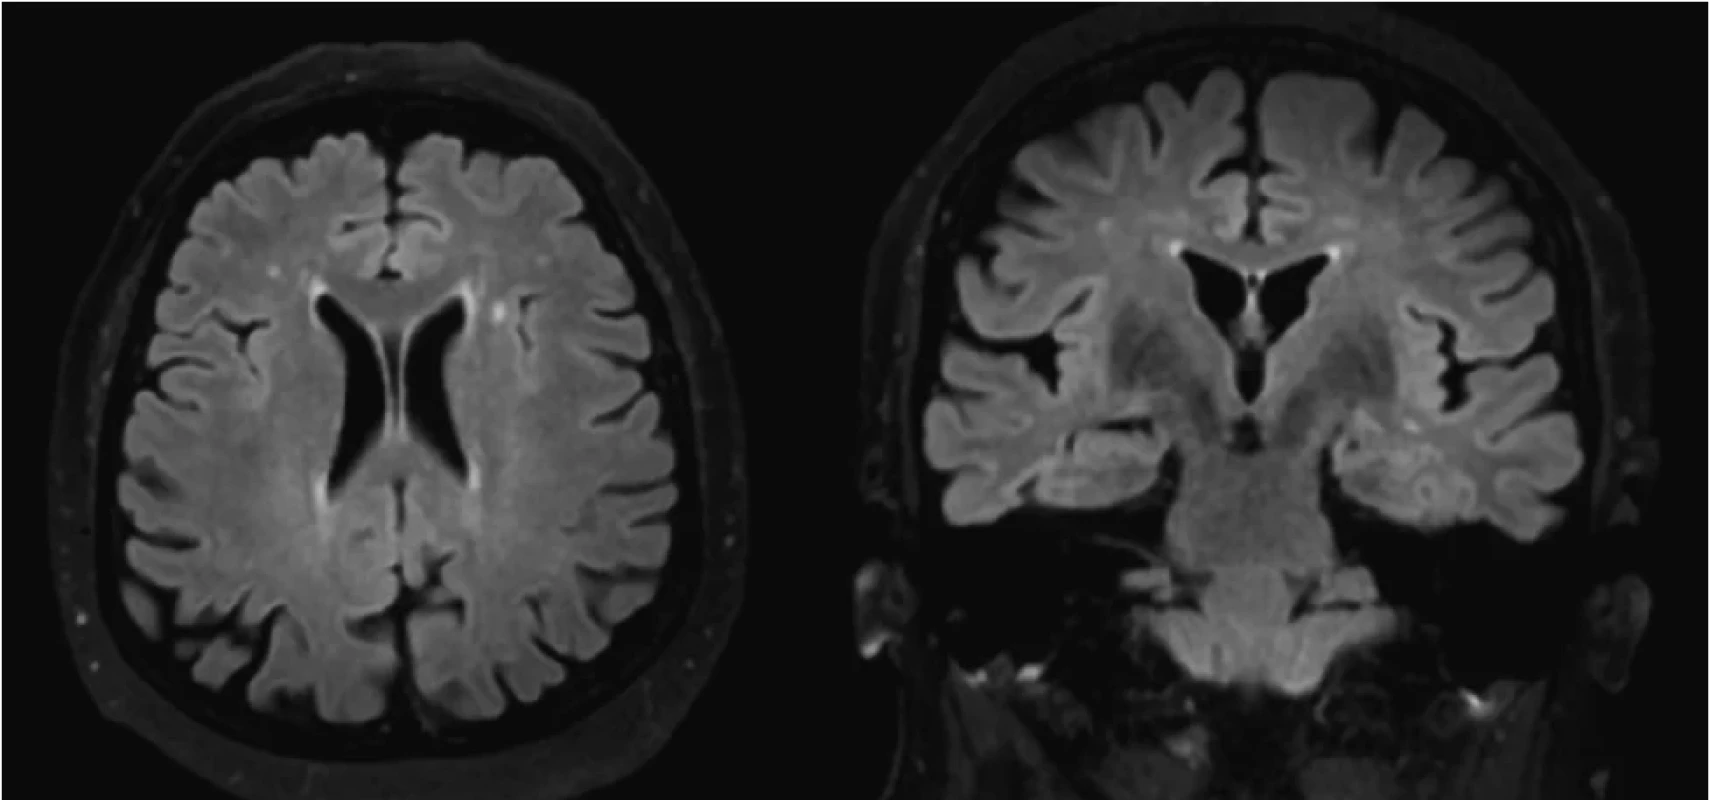 Kontrolné MRI vyšetrenie mozgu (po 4 mesiacoch) odhaľuje regresiu prejavov difúznej leukoencefalopatie (vľavo koronárny rez, vpravo axiálny rez; FLAIR sekvencia)